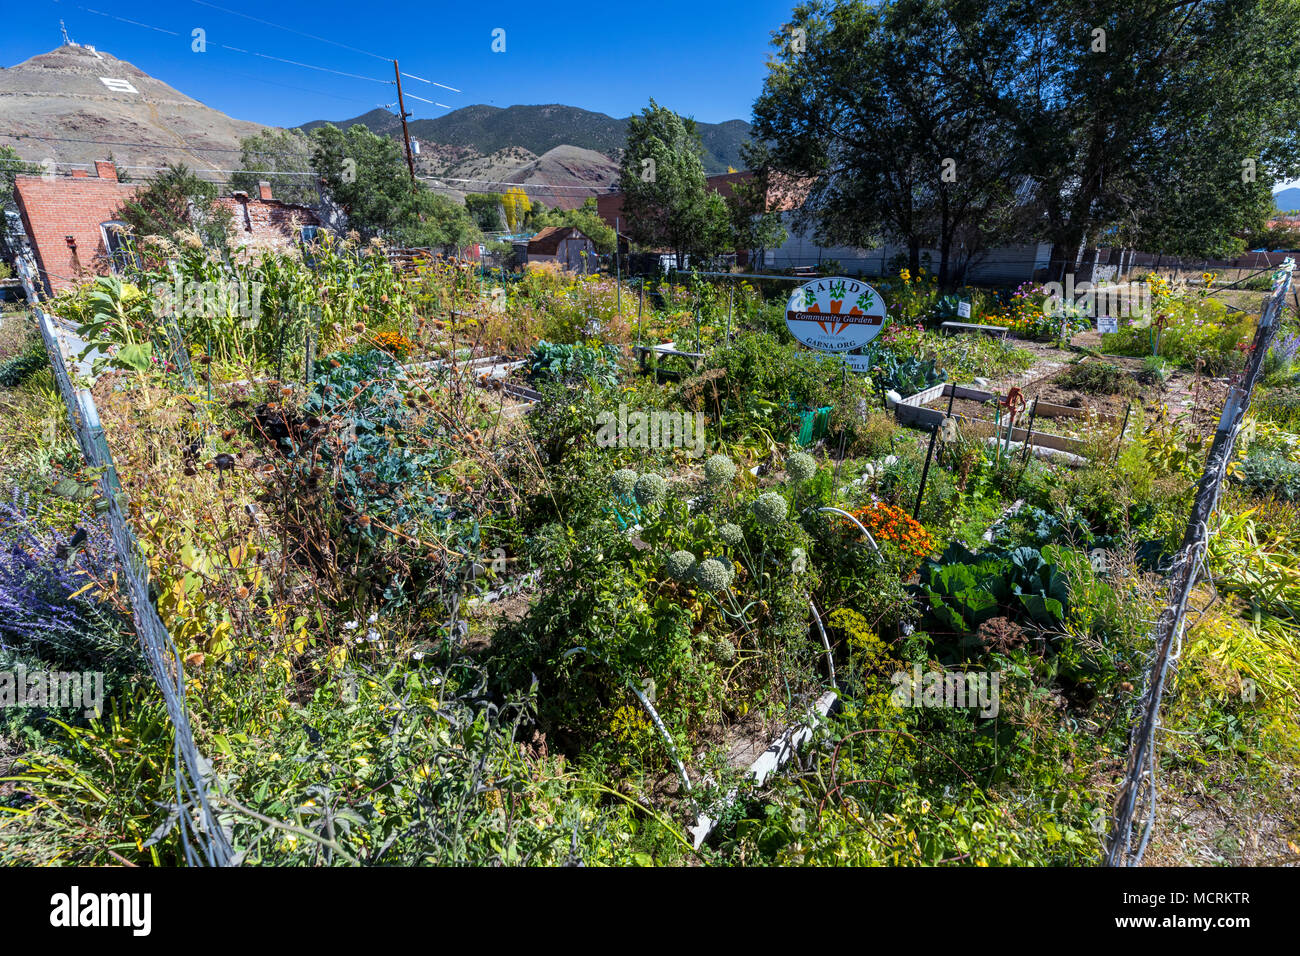 Ottobre; Salida comunità giardino; Salida, Colorado, STATI UNITI D'AMERICA Foto Stock